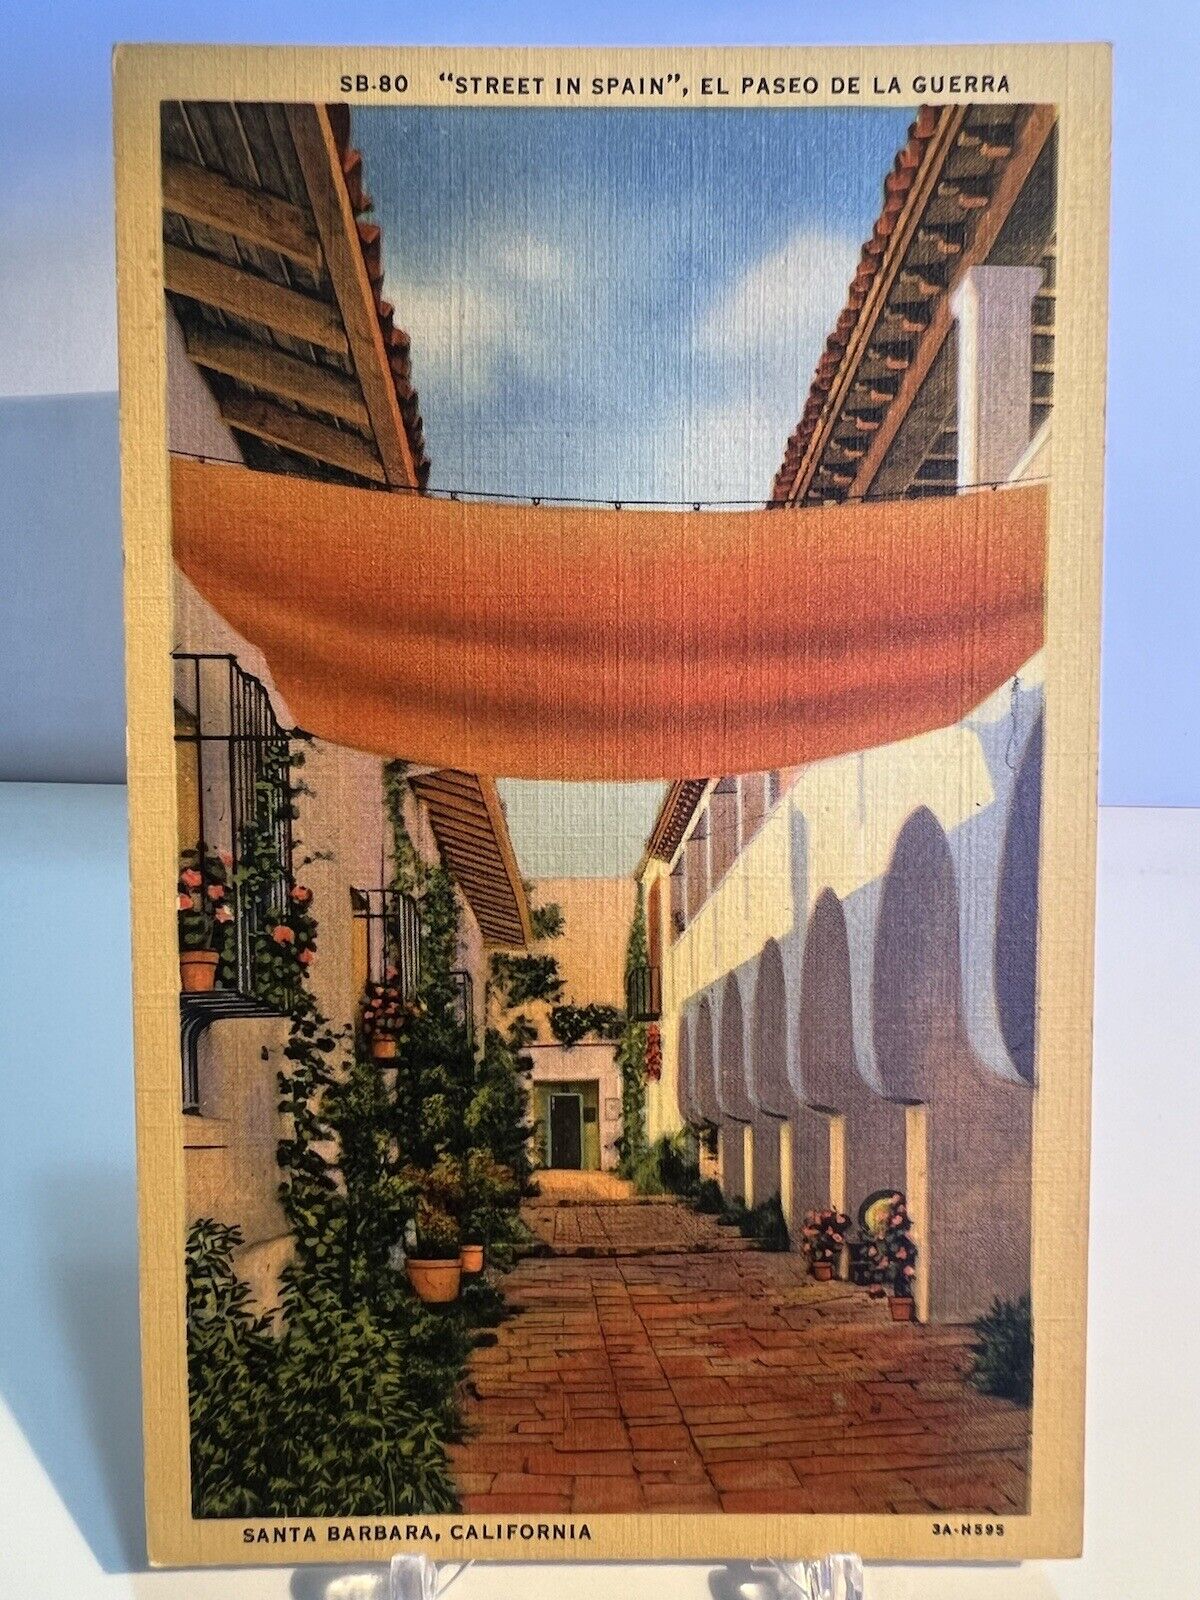 Postcard “Street in Spain” El Paseo de la Guerra, Santa Barbara, California